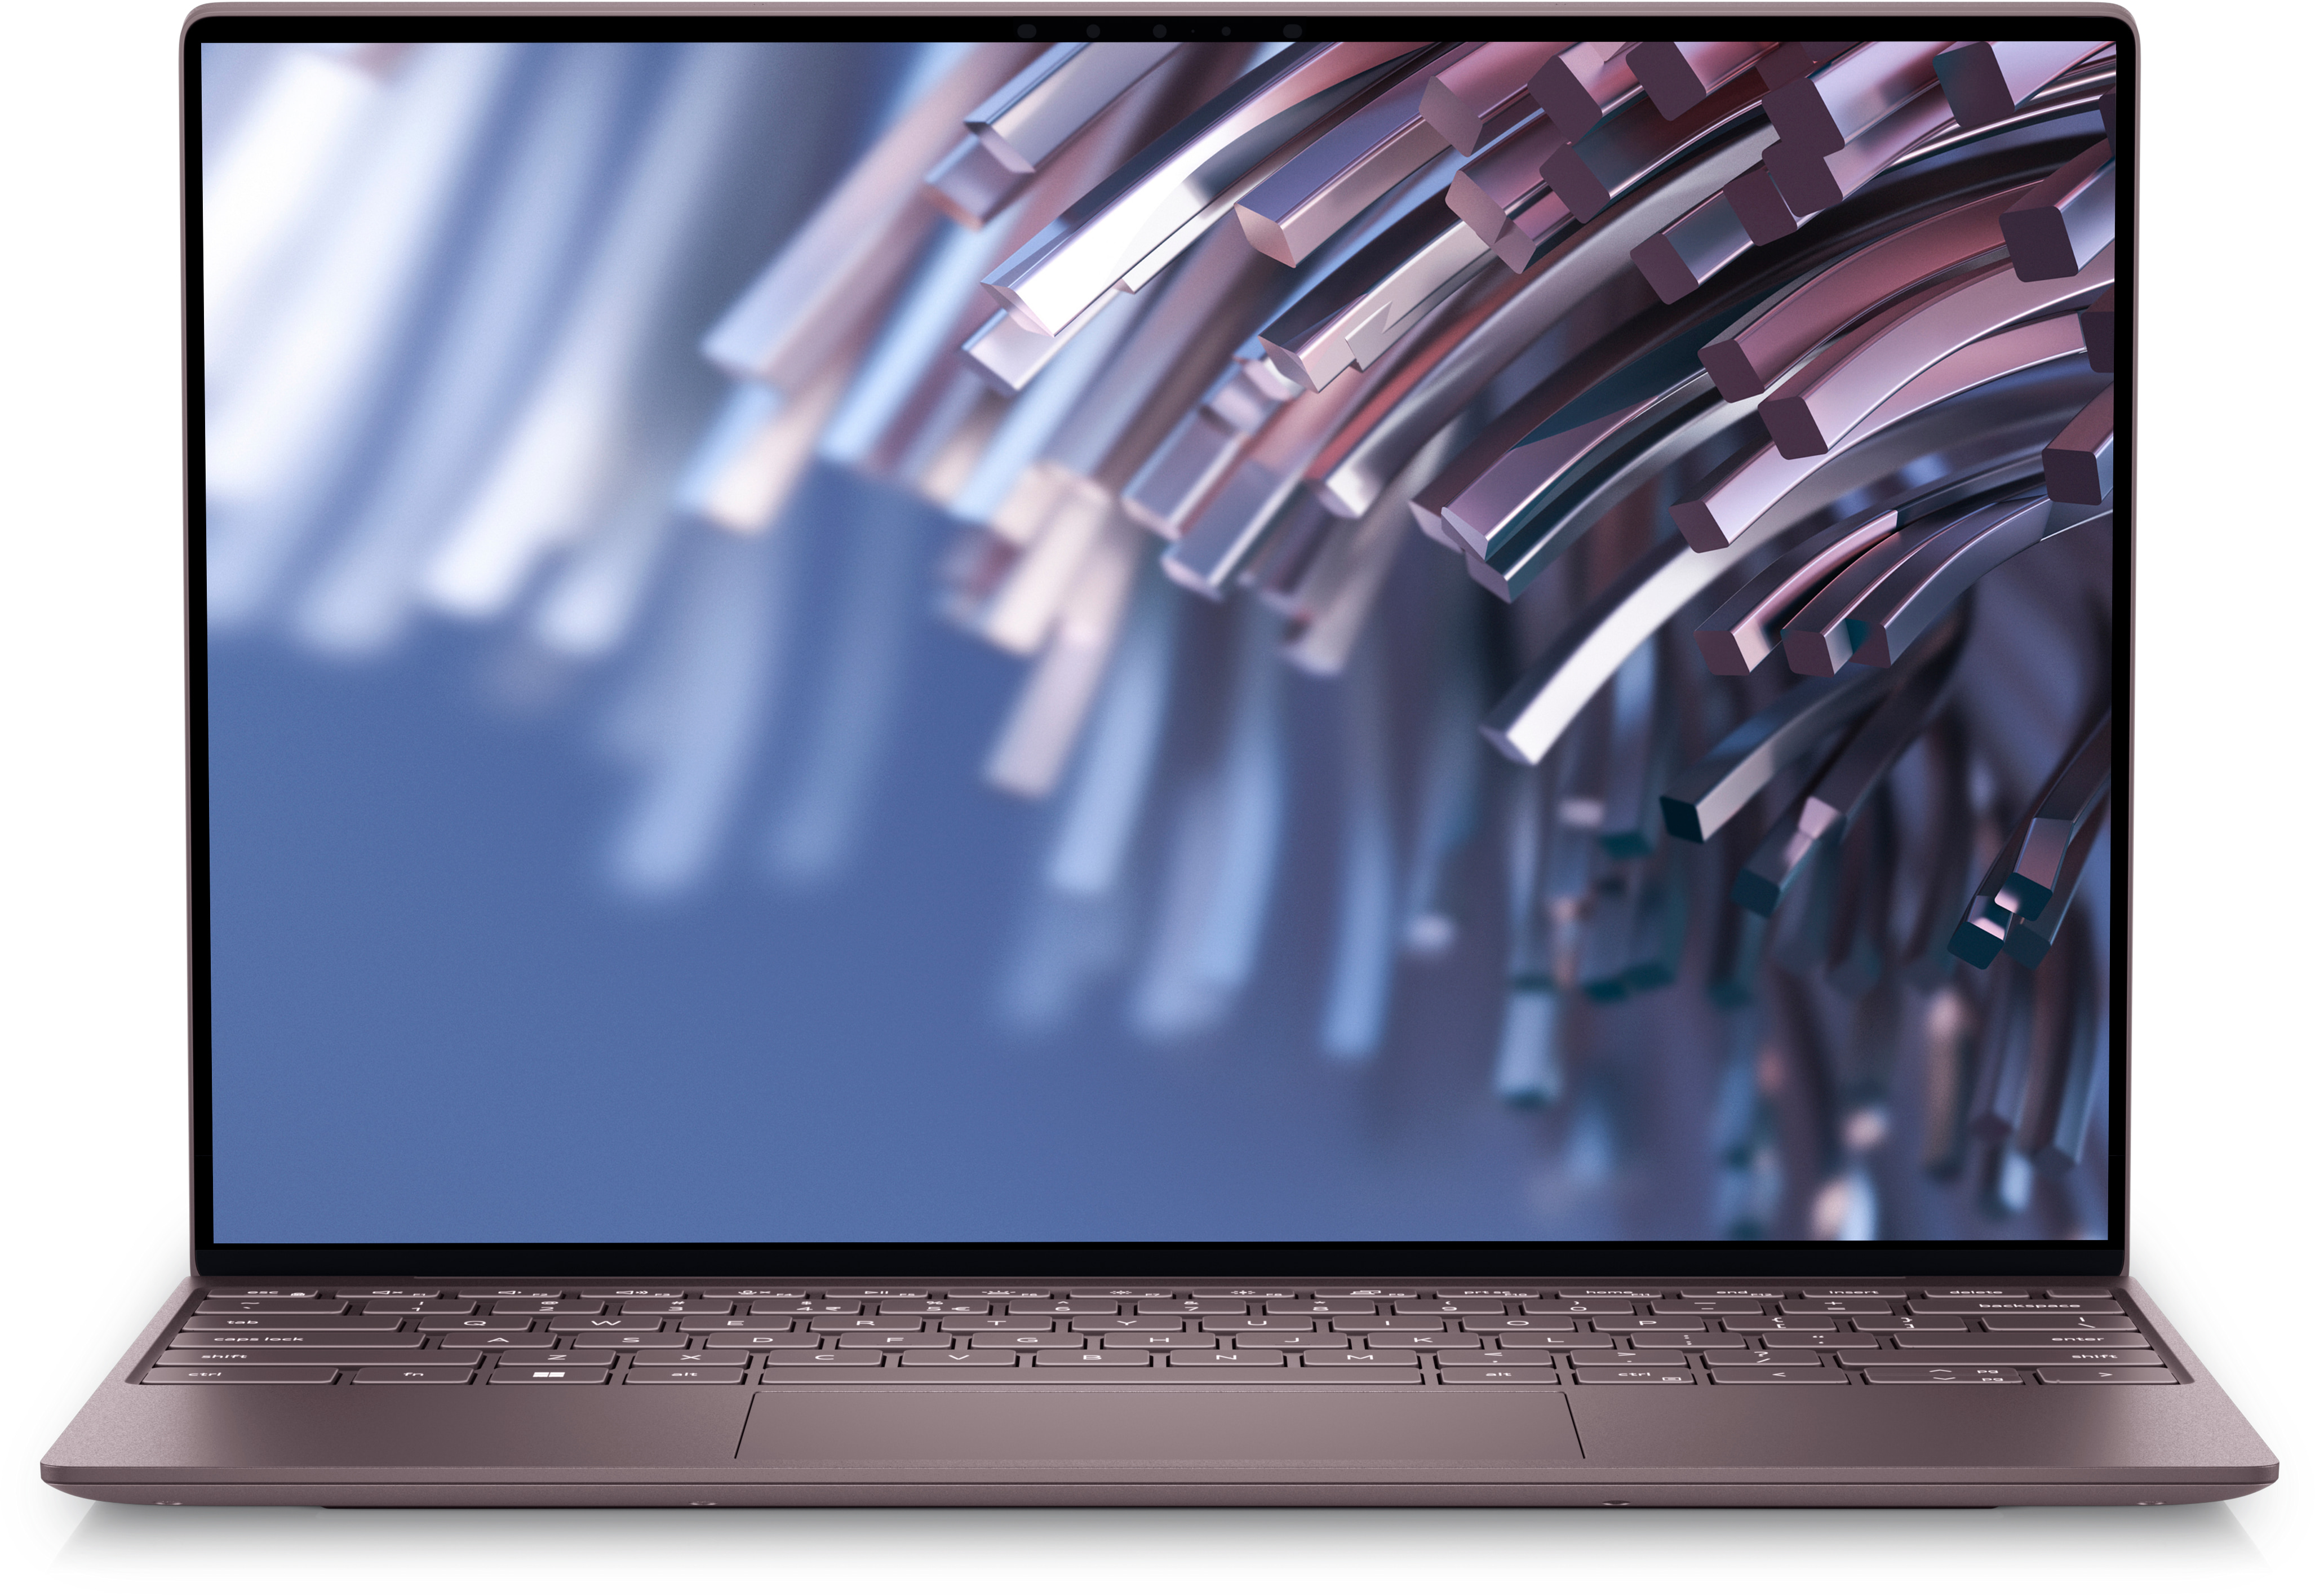 DOMISO 13-13,3 Zoll Wasserdicht Laptophülle mit USB Ladeanschluss Headphone Port Tasche für Apple MacBook Pro/MacBook Air/Dell XPS 13 Inspiron 13 Lenovo/HP ASUS Schwarz Acer Swift 1 